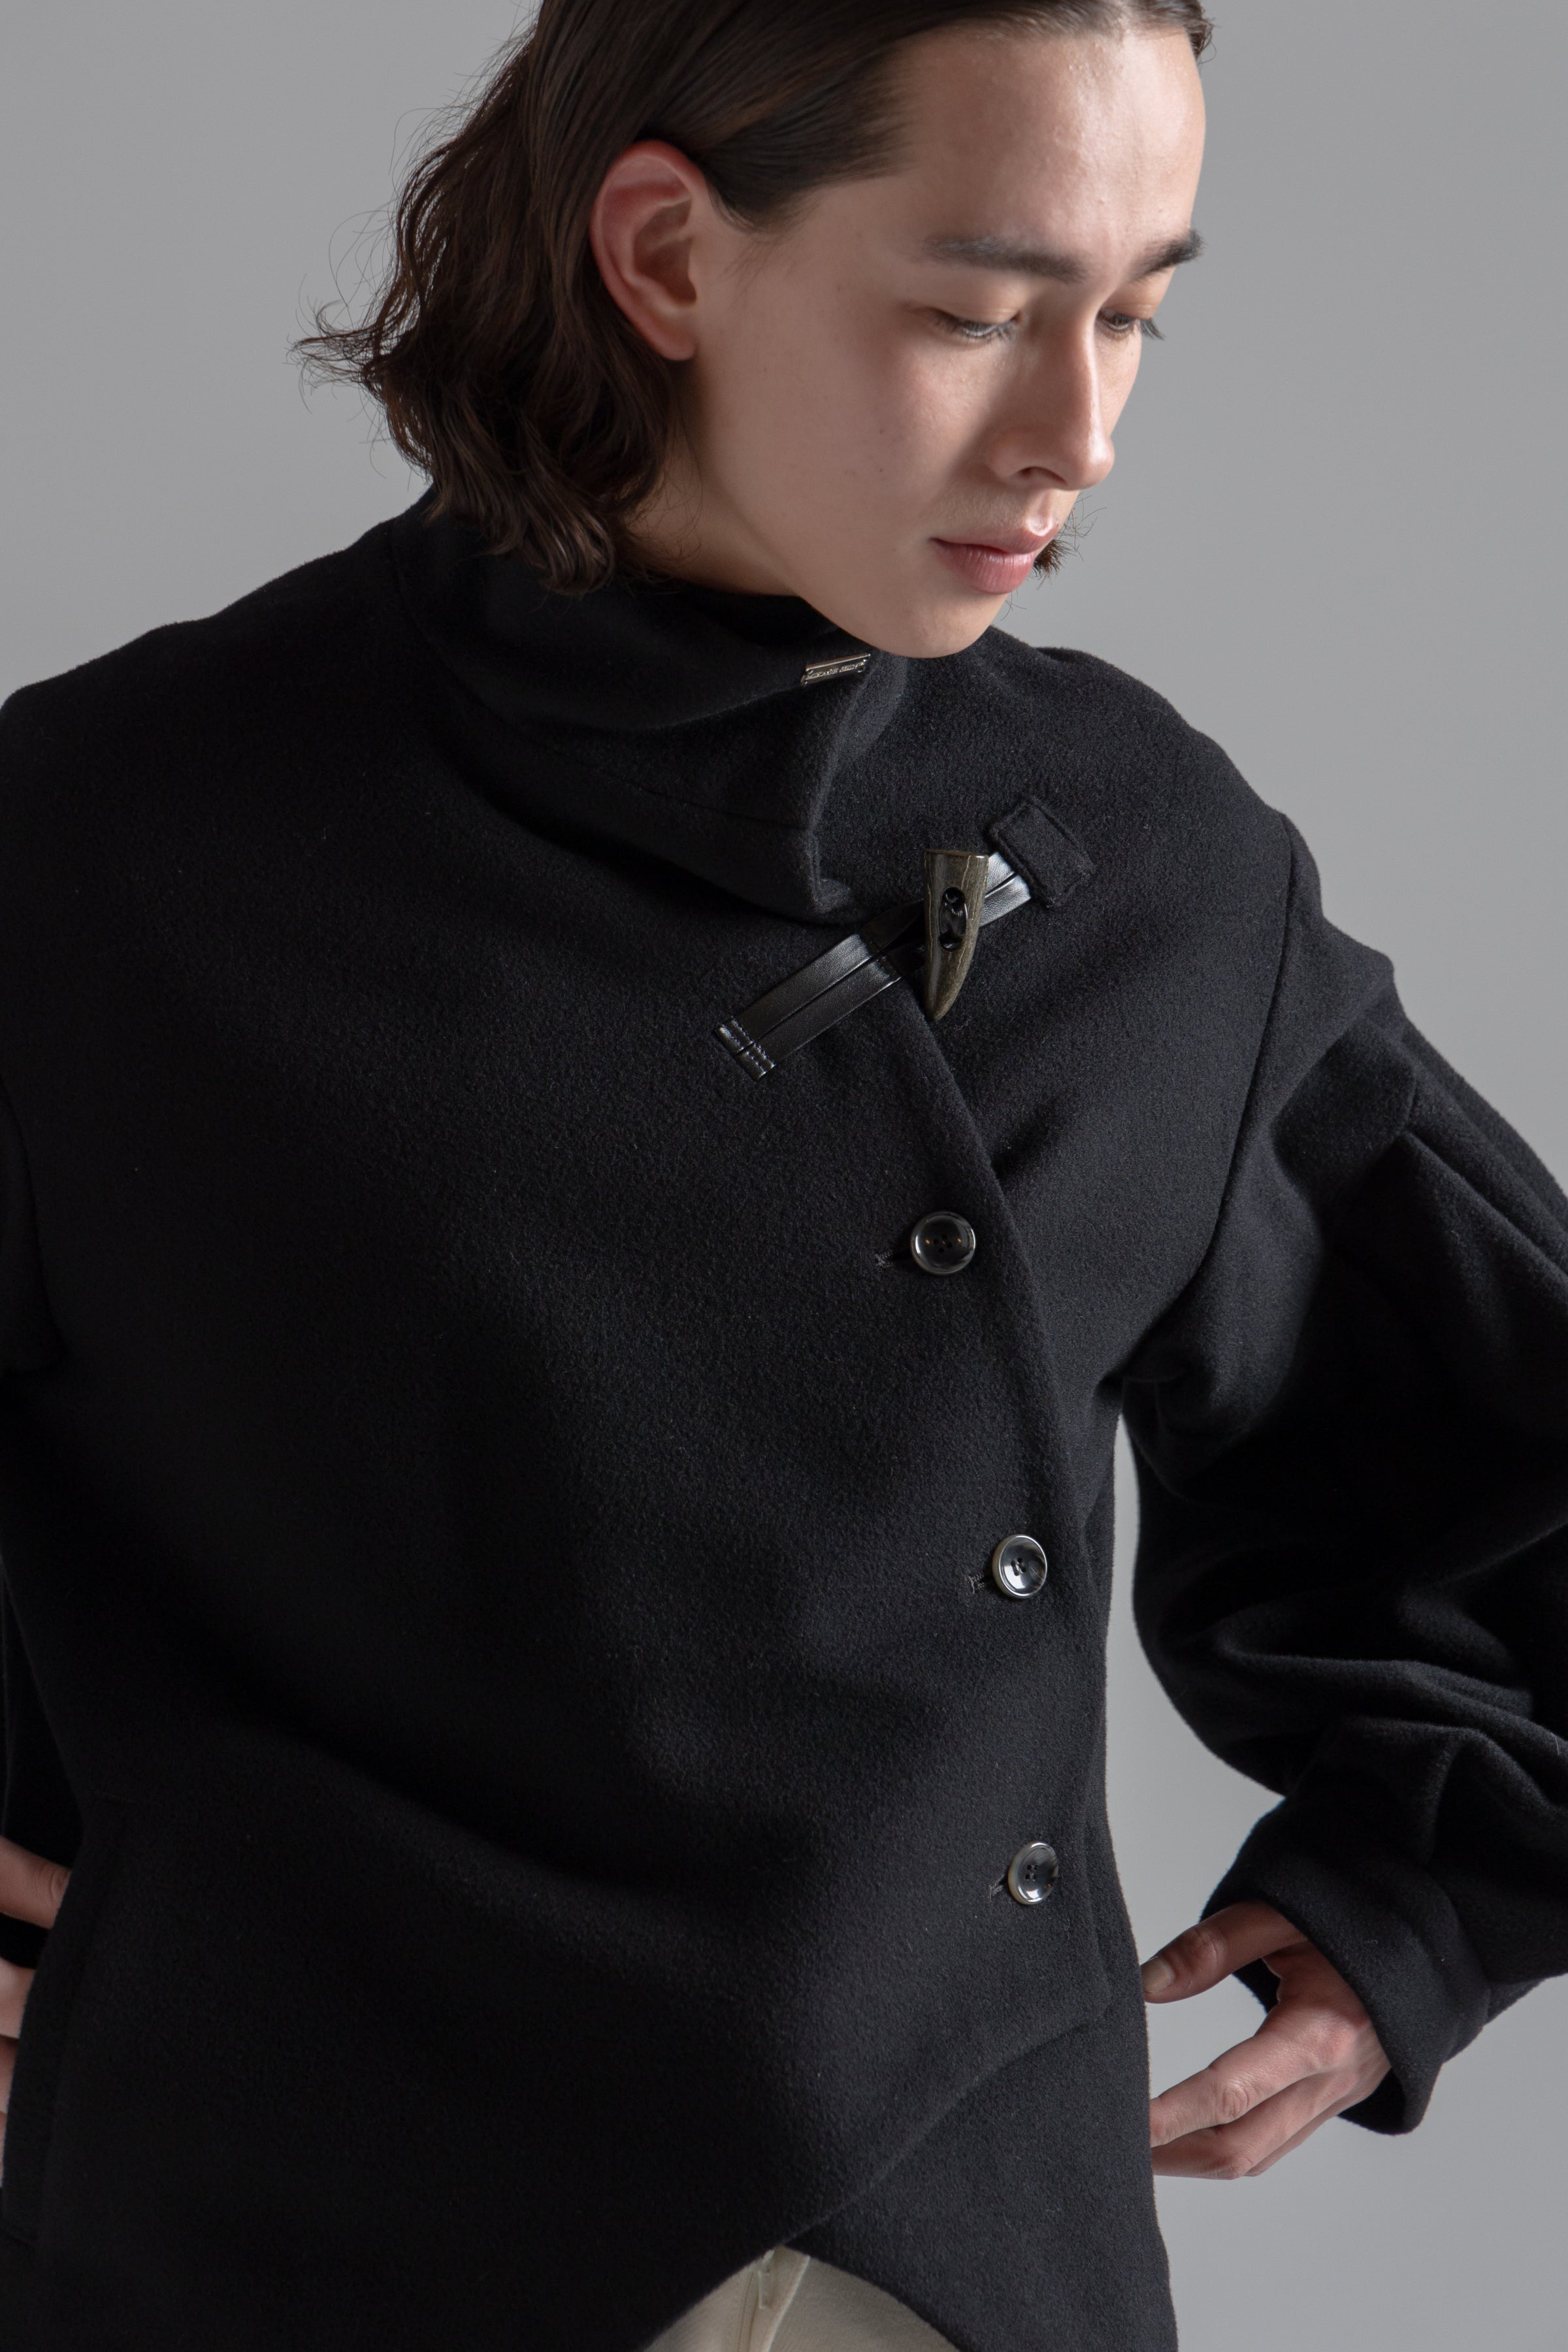 Bias Cut Short Duffle Coat – MIKAGE SHIN